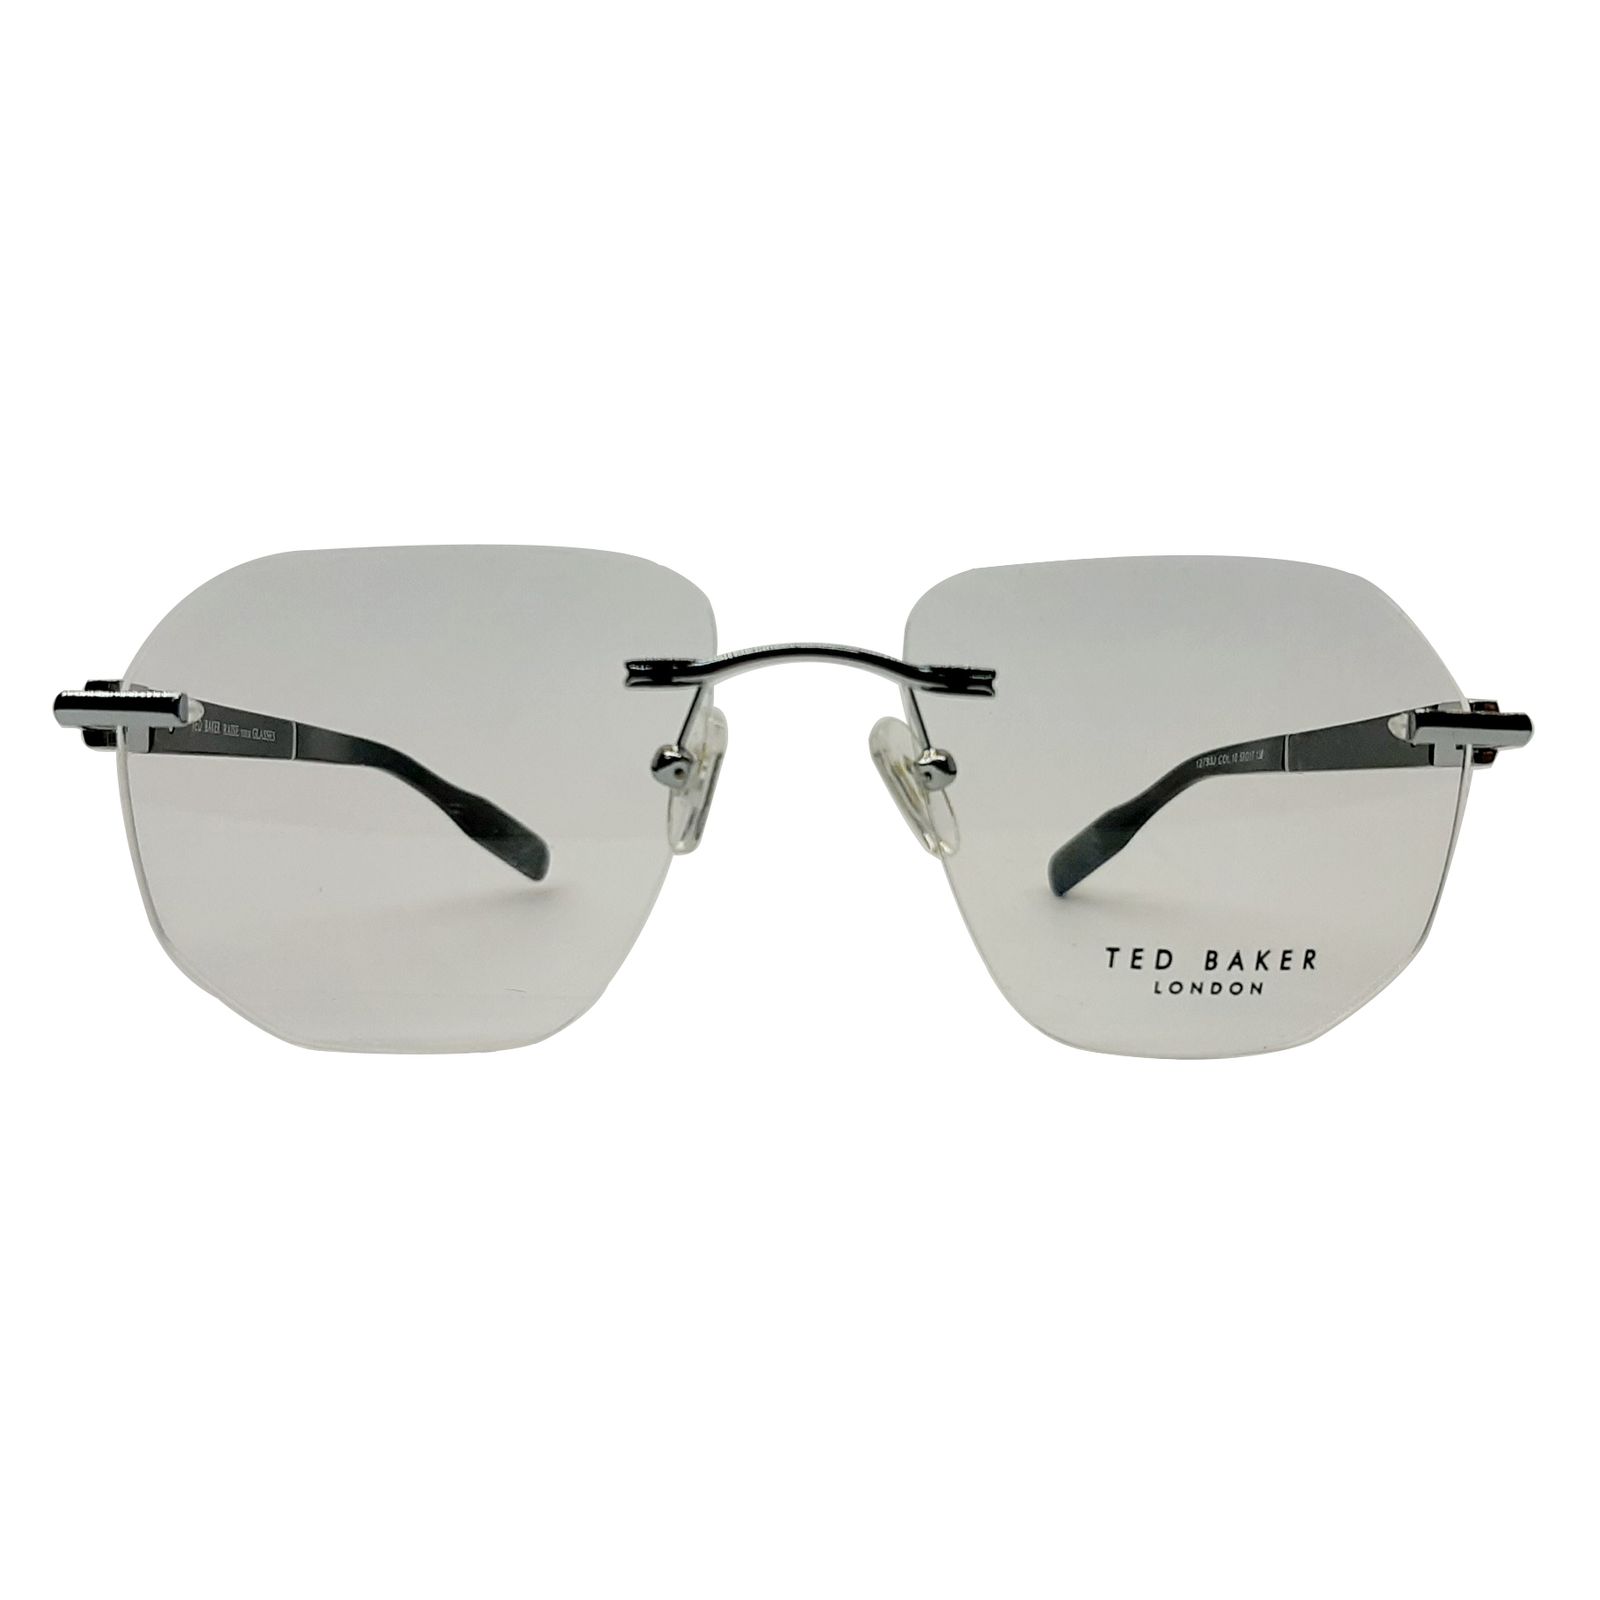 فریم عینک طبی تد بیکر مدل T12762Jcol.10